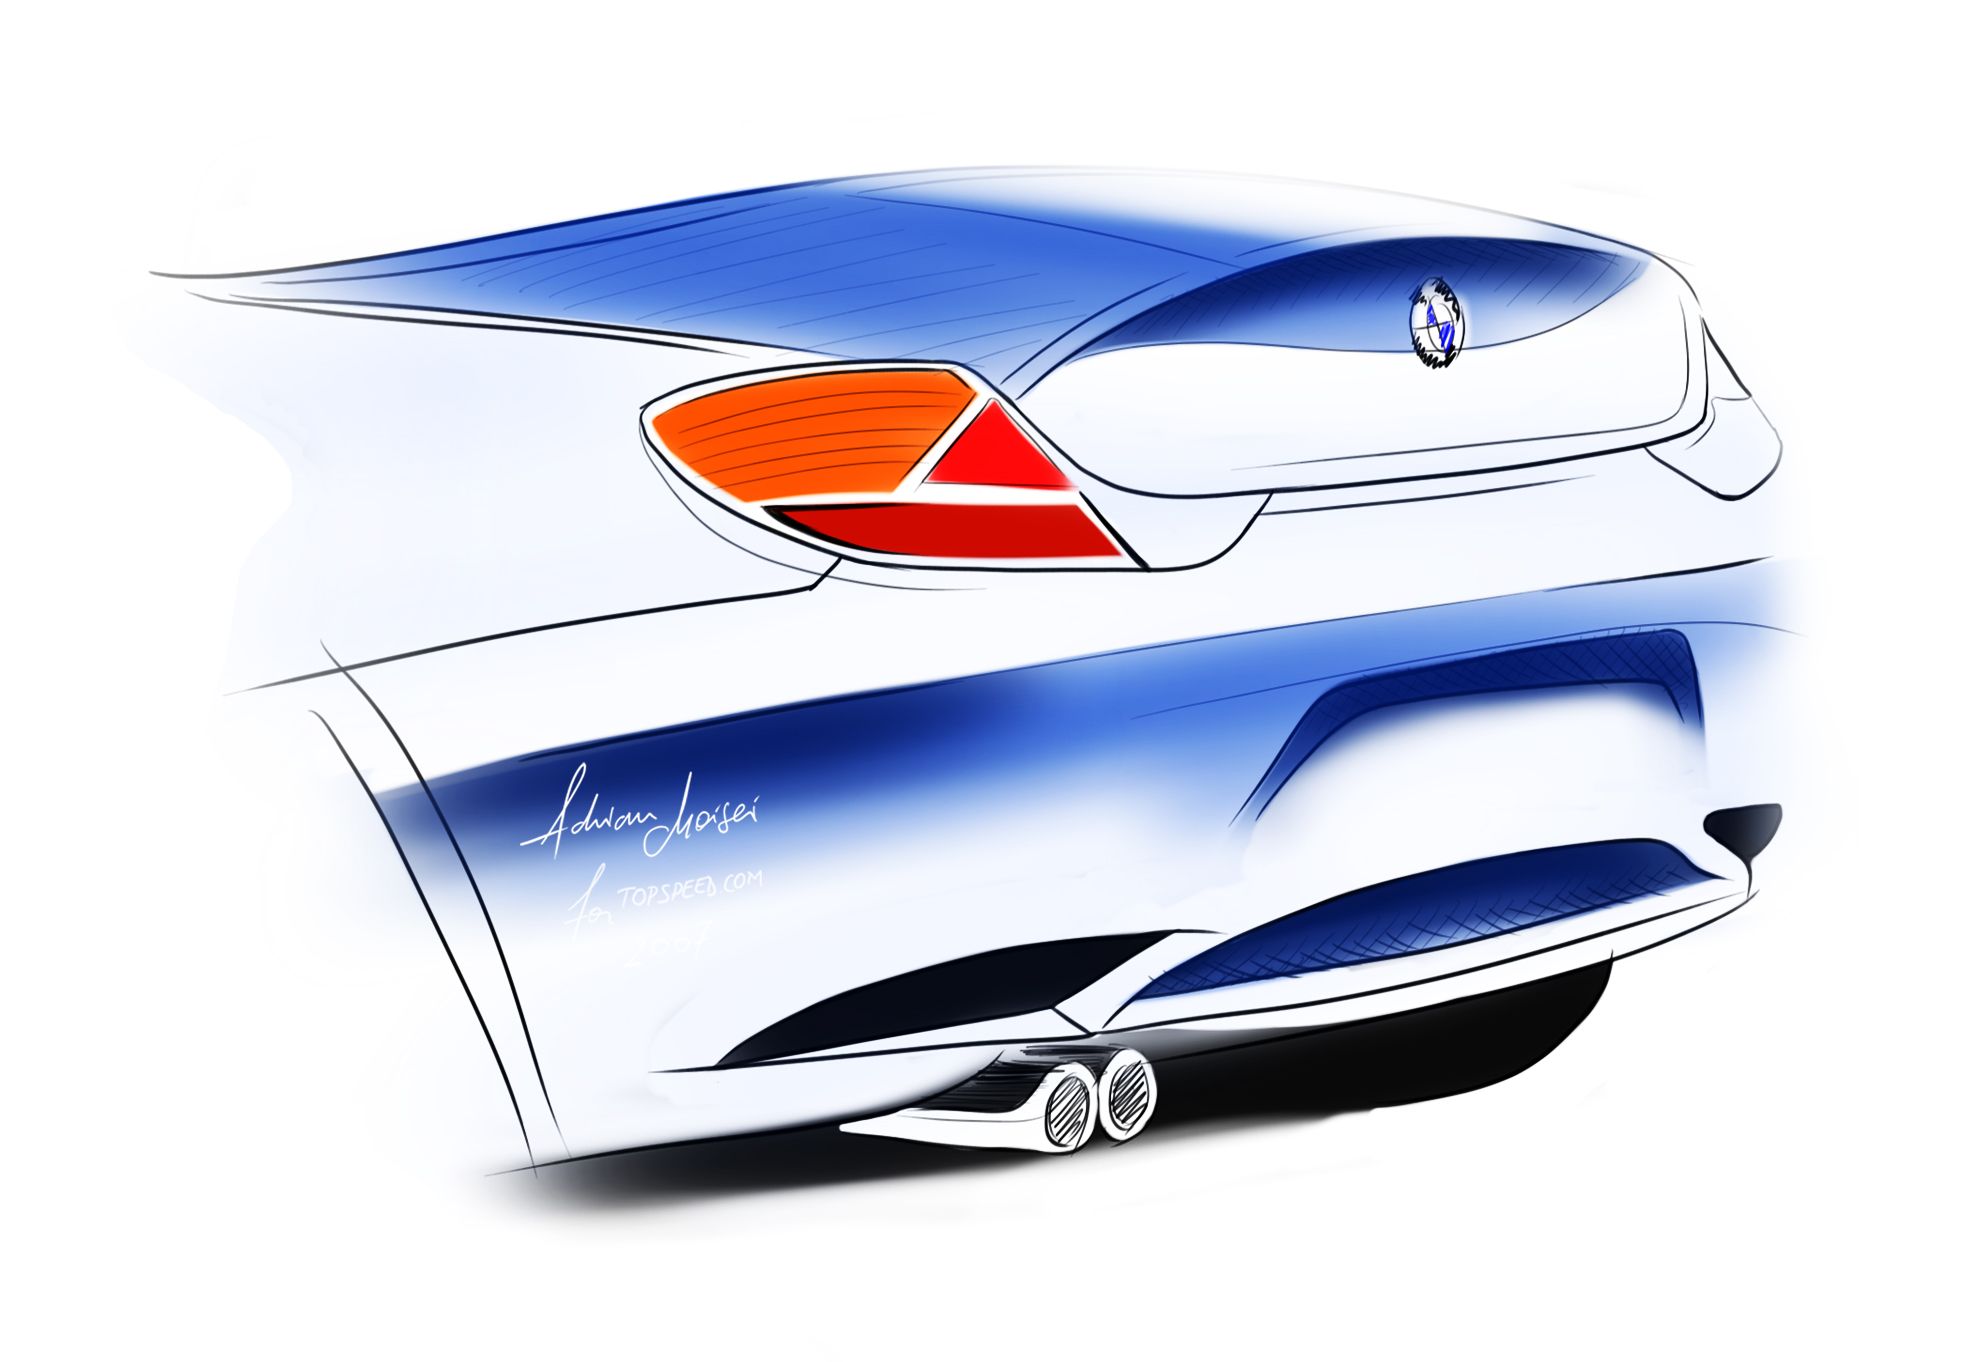 2009 BMW Z4 - rear